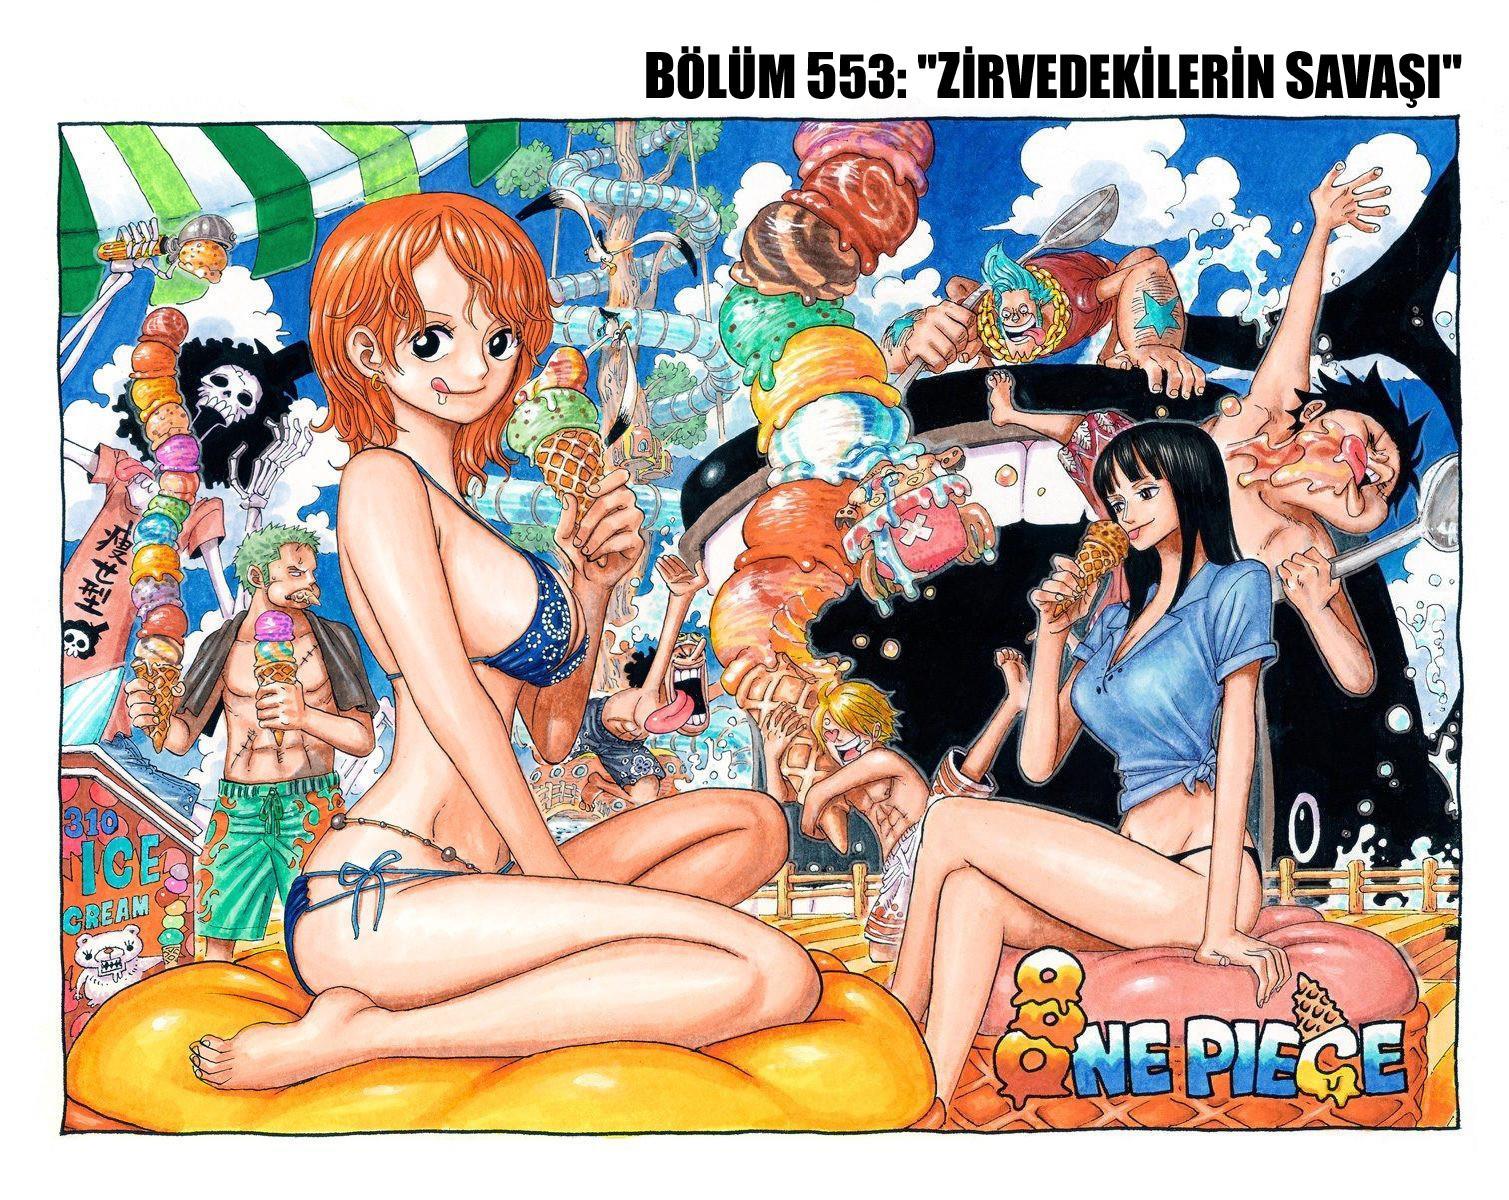 One Piece [Renkli] mangasının 0553 bölümünün 2. sayfasını okuyorsunuz.